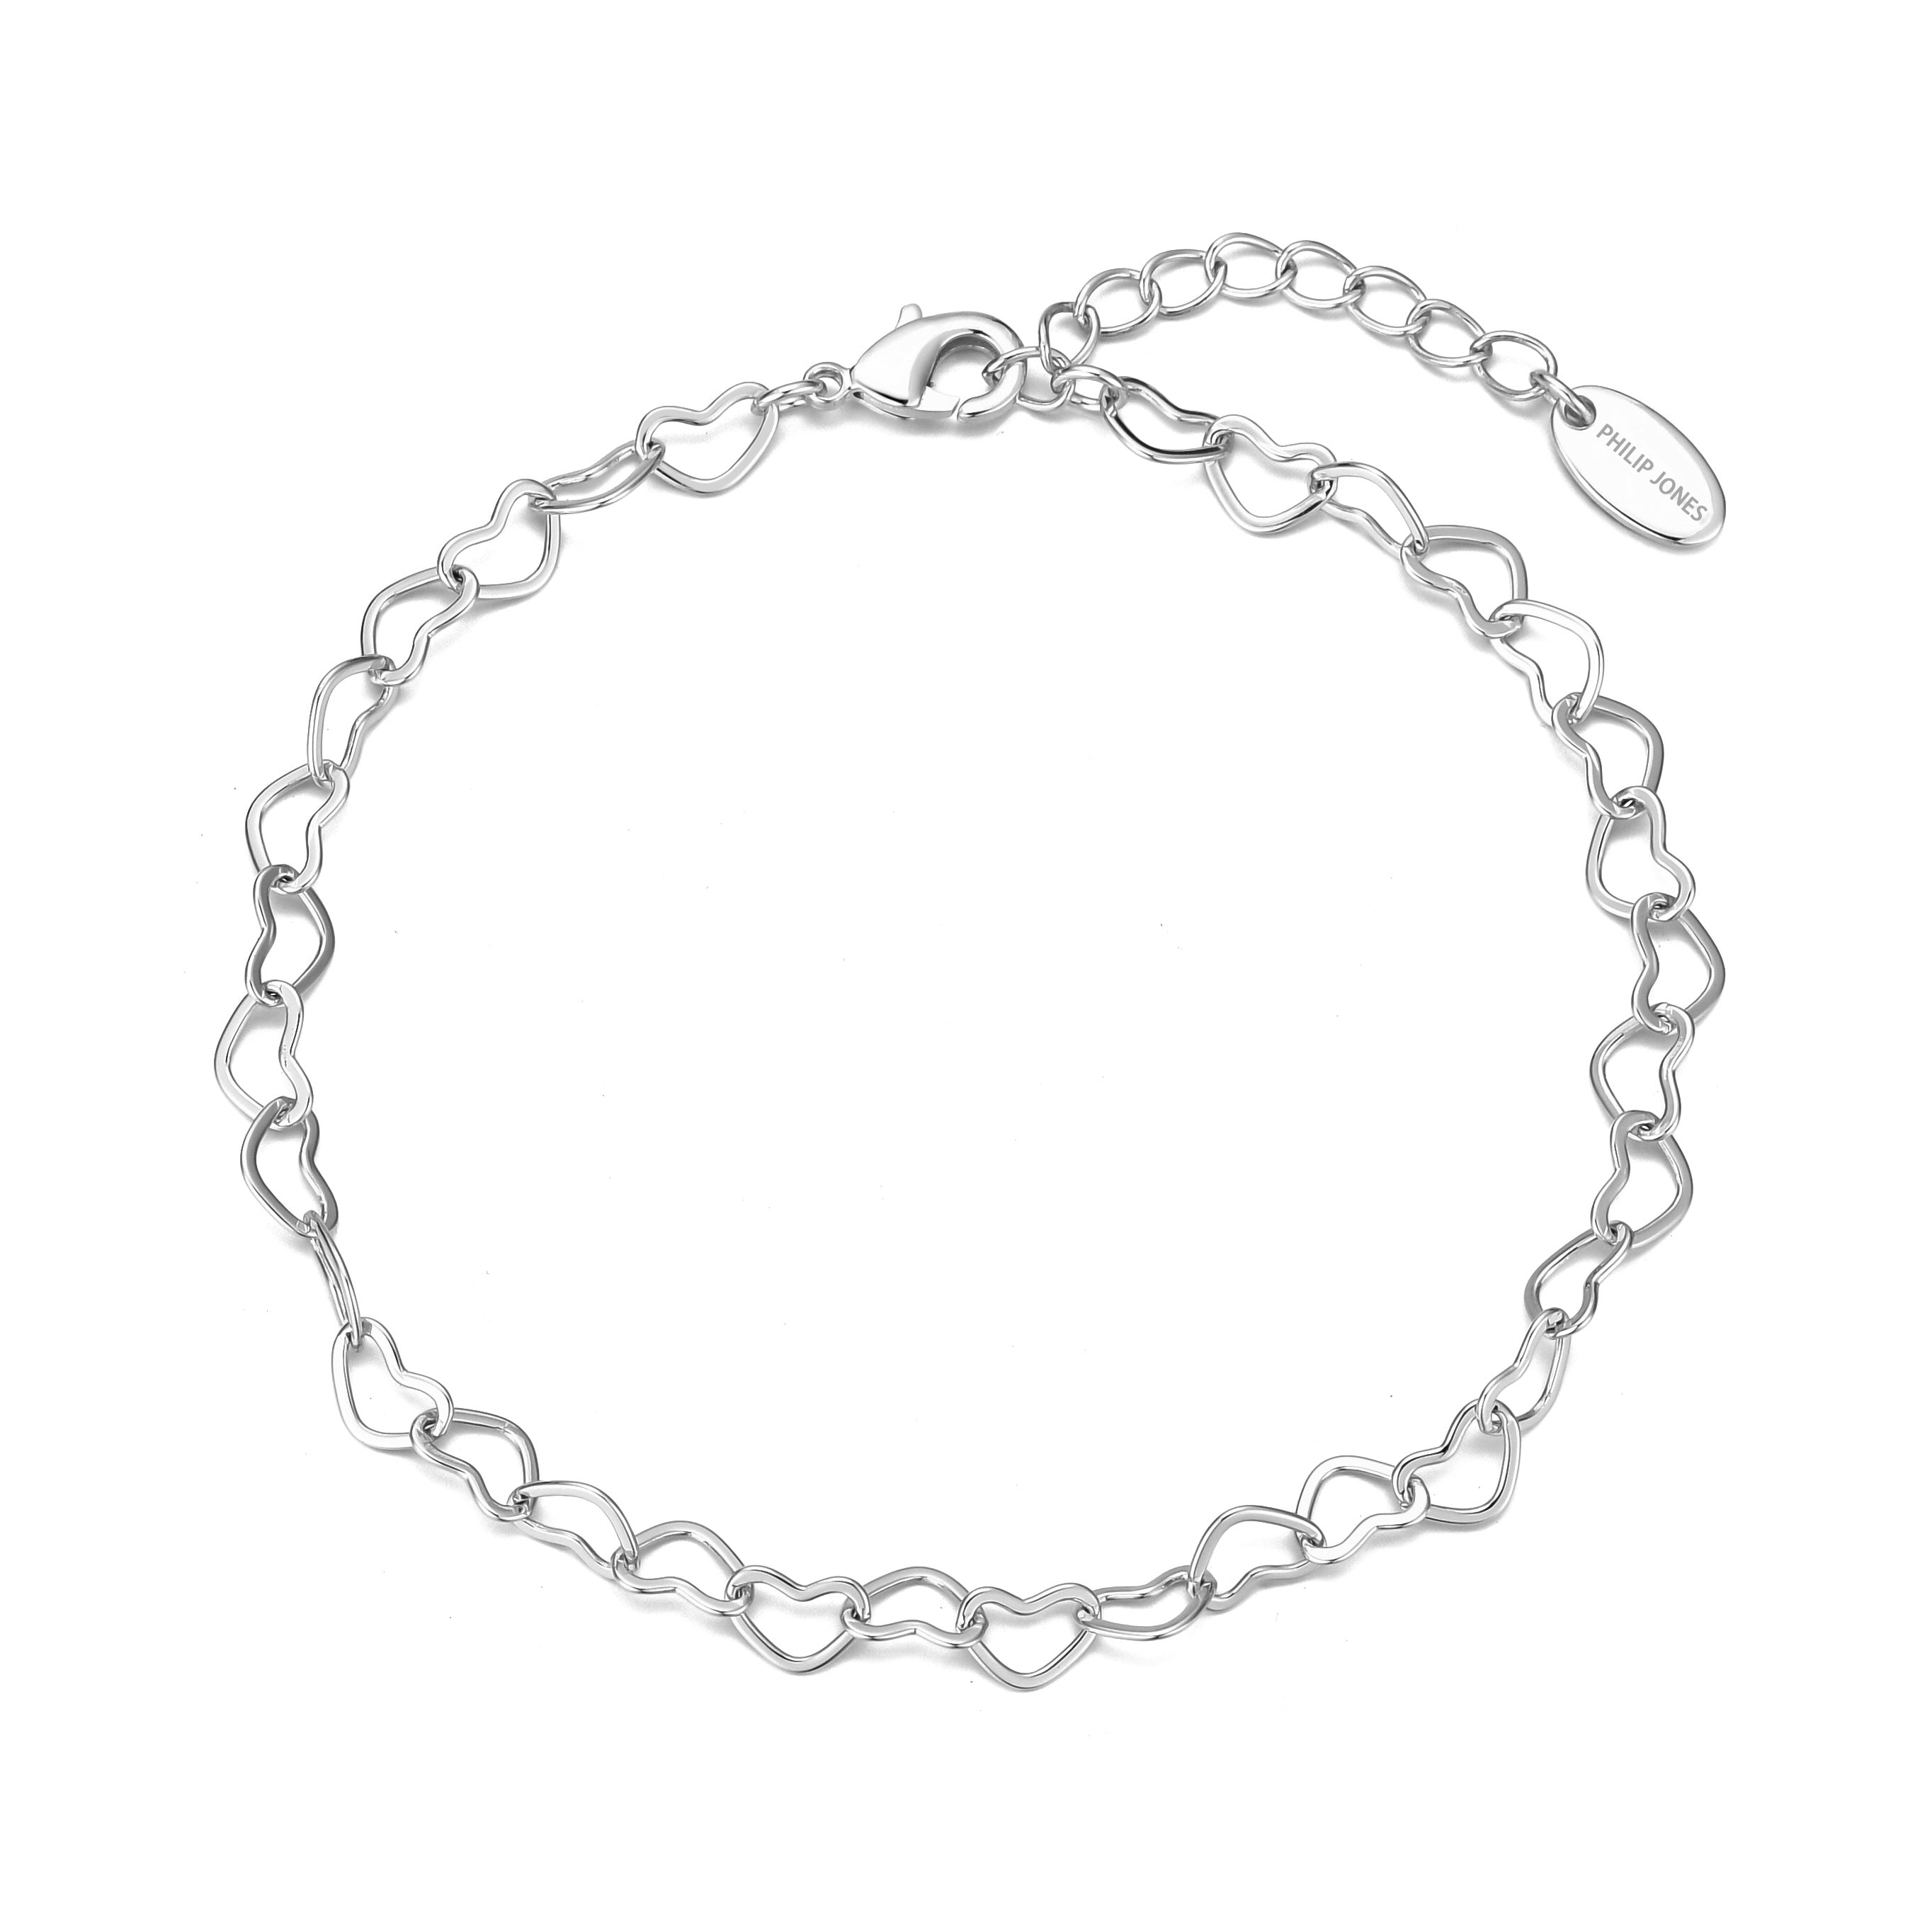 Silver Plated Heart Link Bracelet by Philip Jones Jewellery